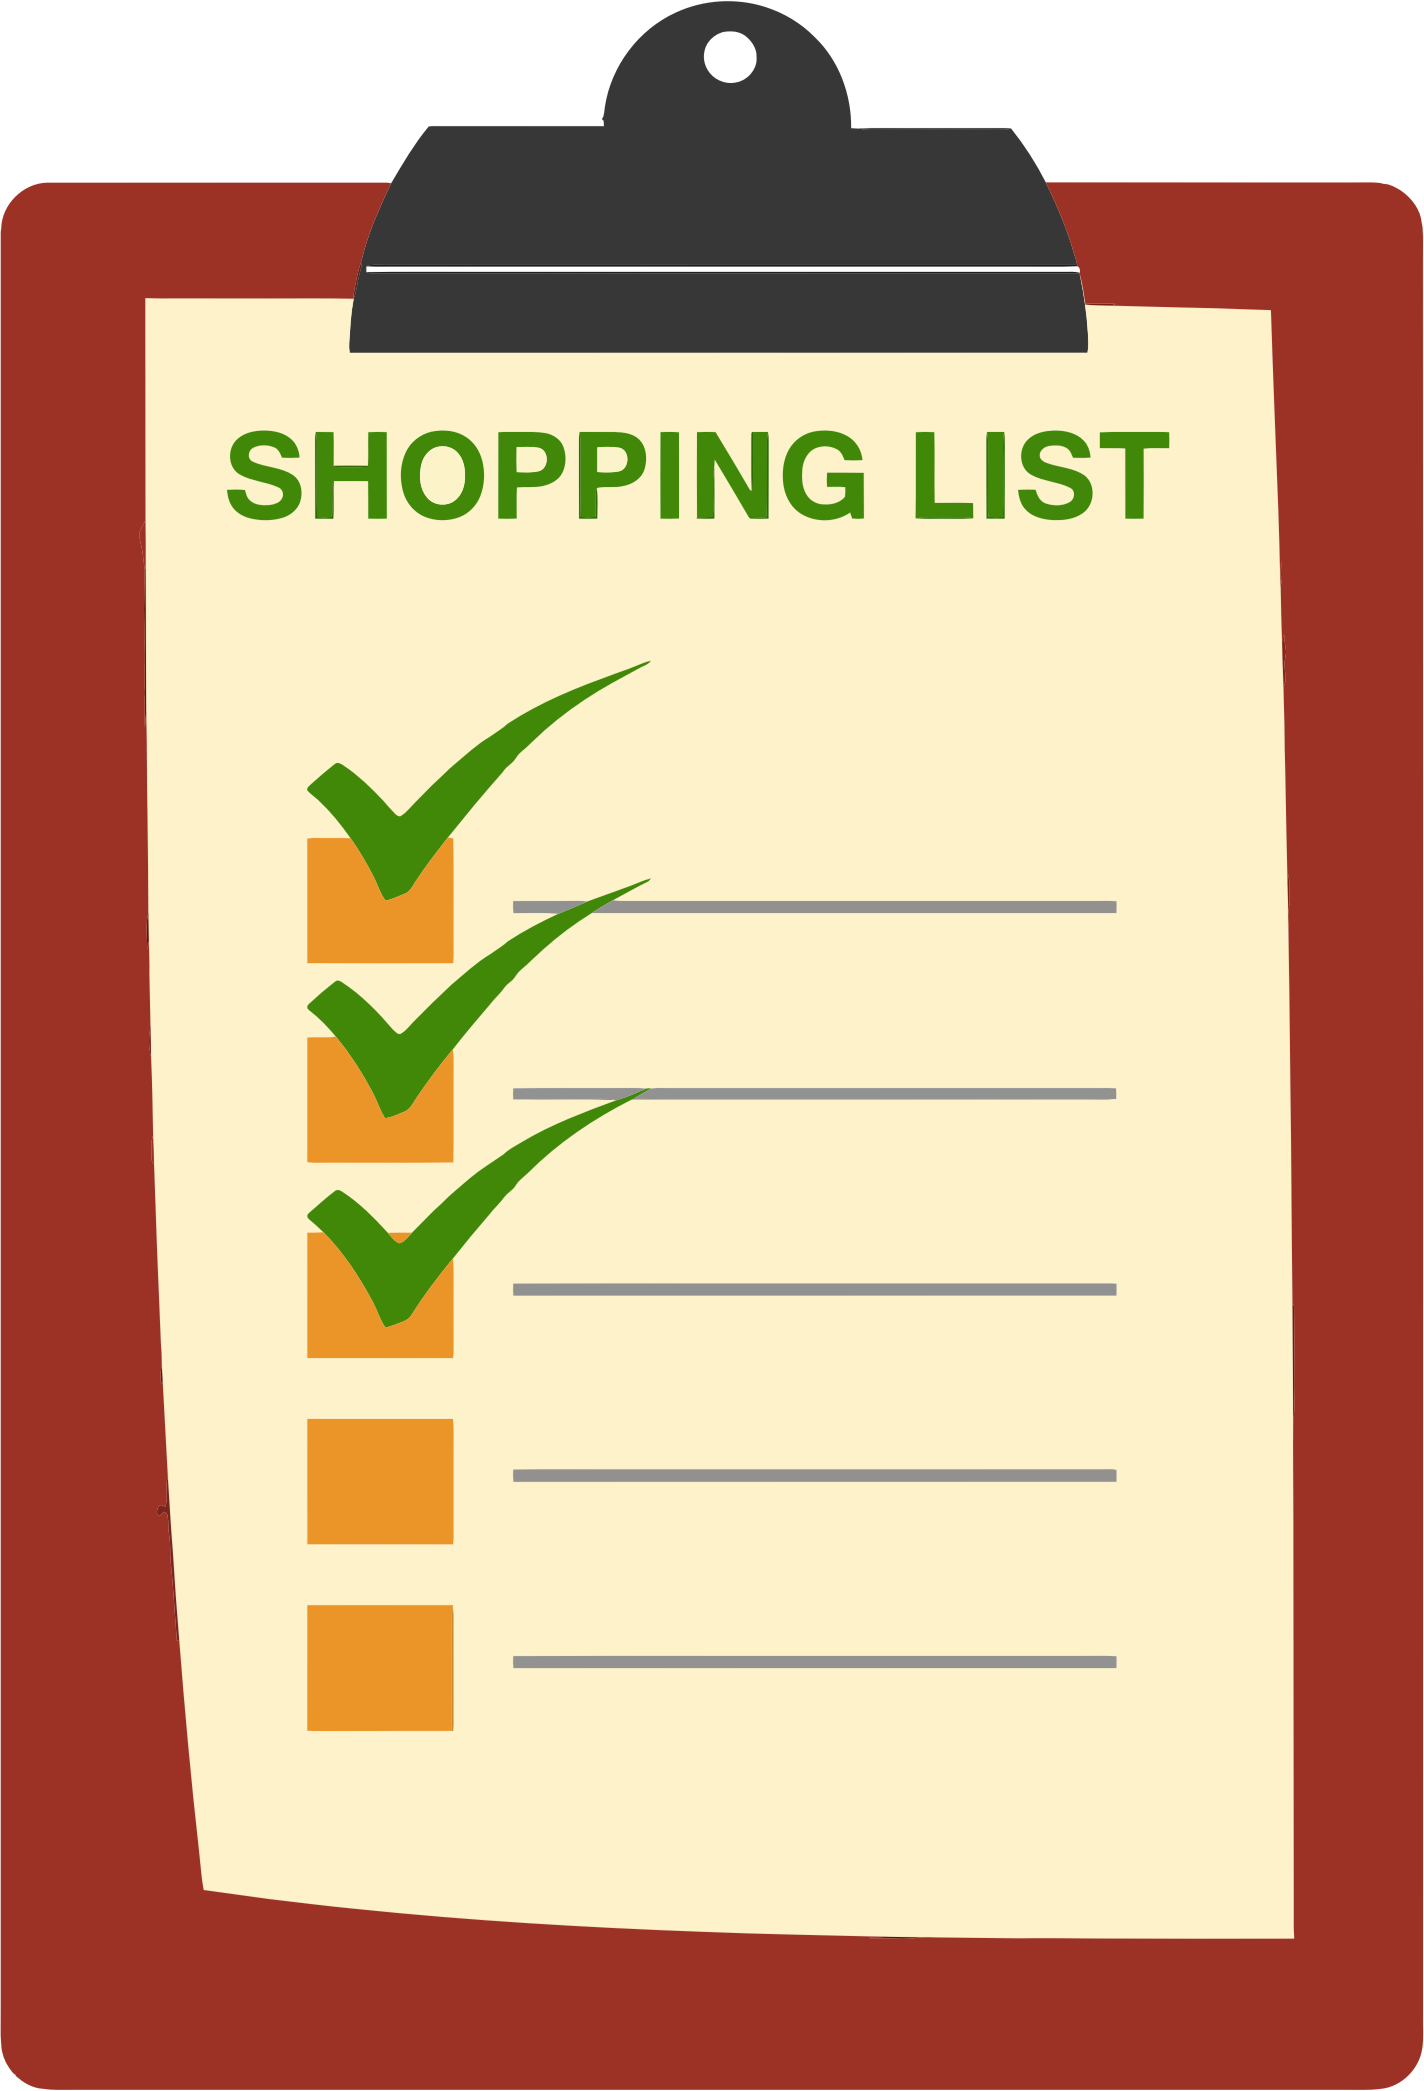 Making a shopping list. Shopping list. Список покупок. Список покупок картинка. Shopping list шаблон.